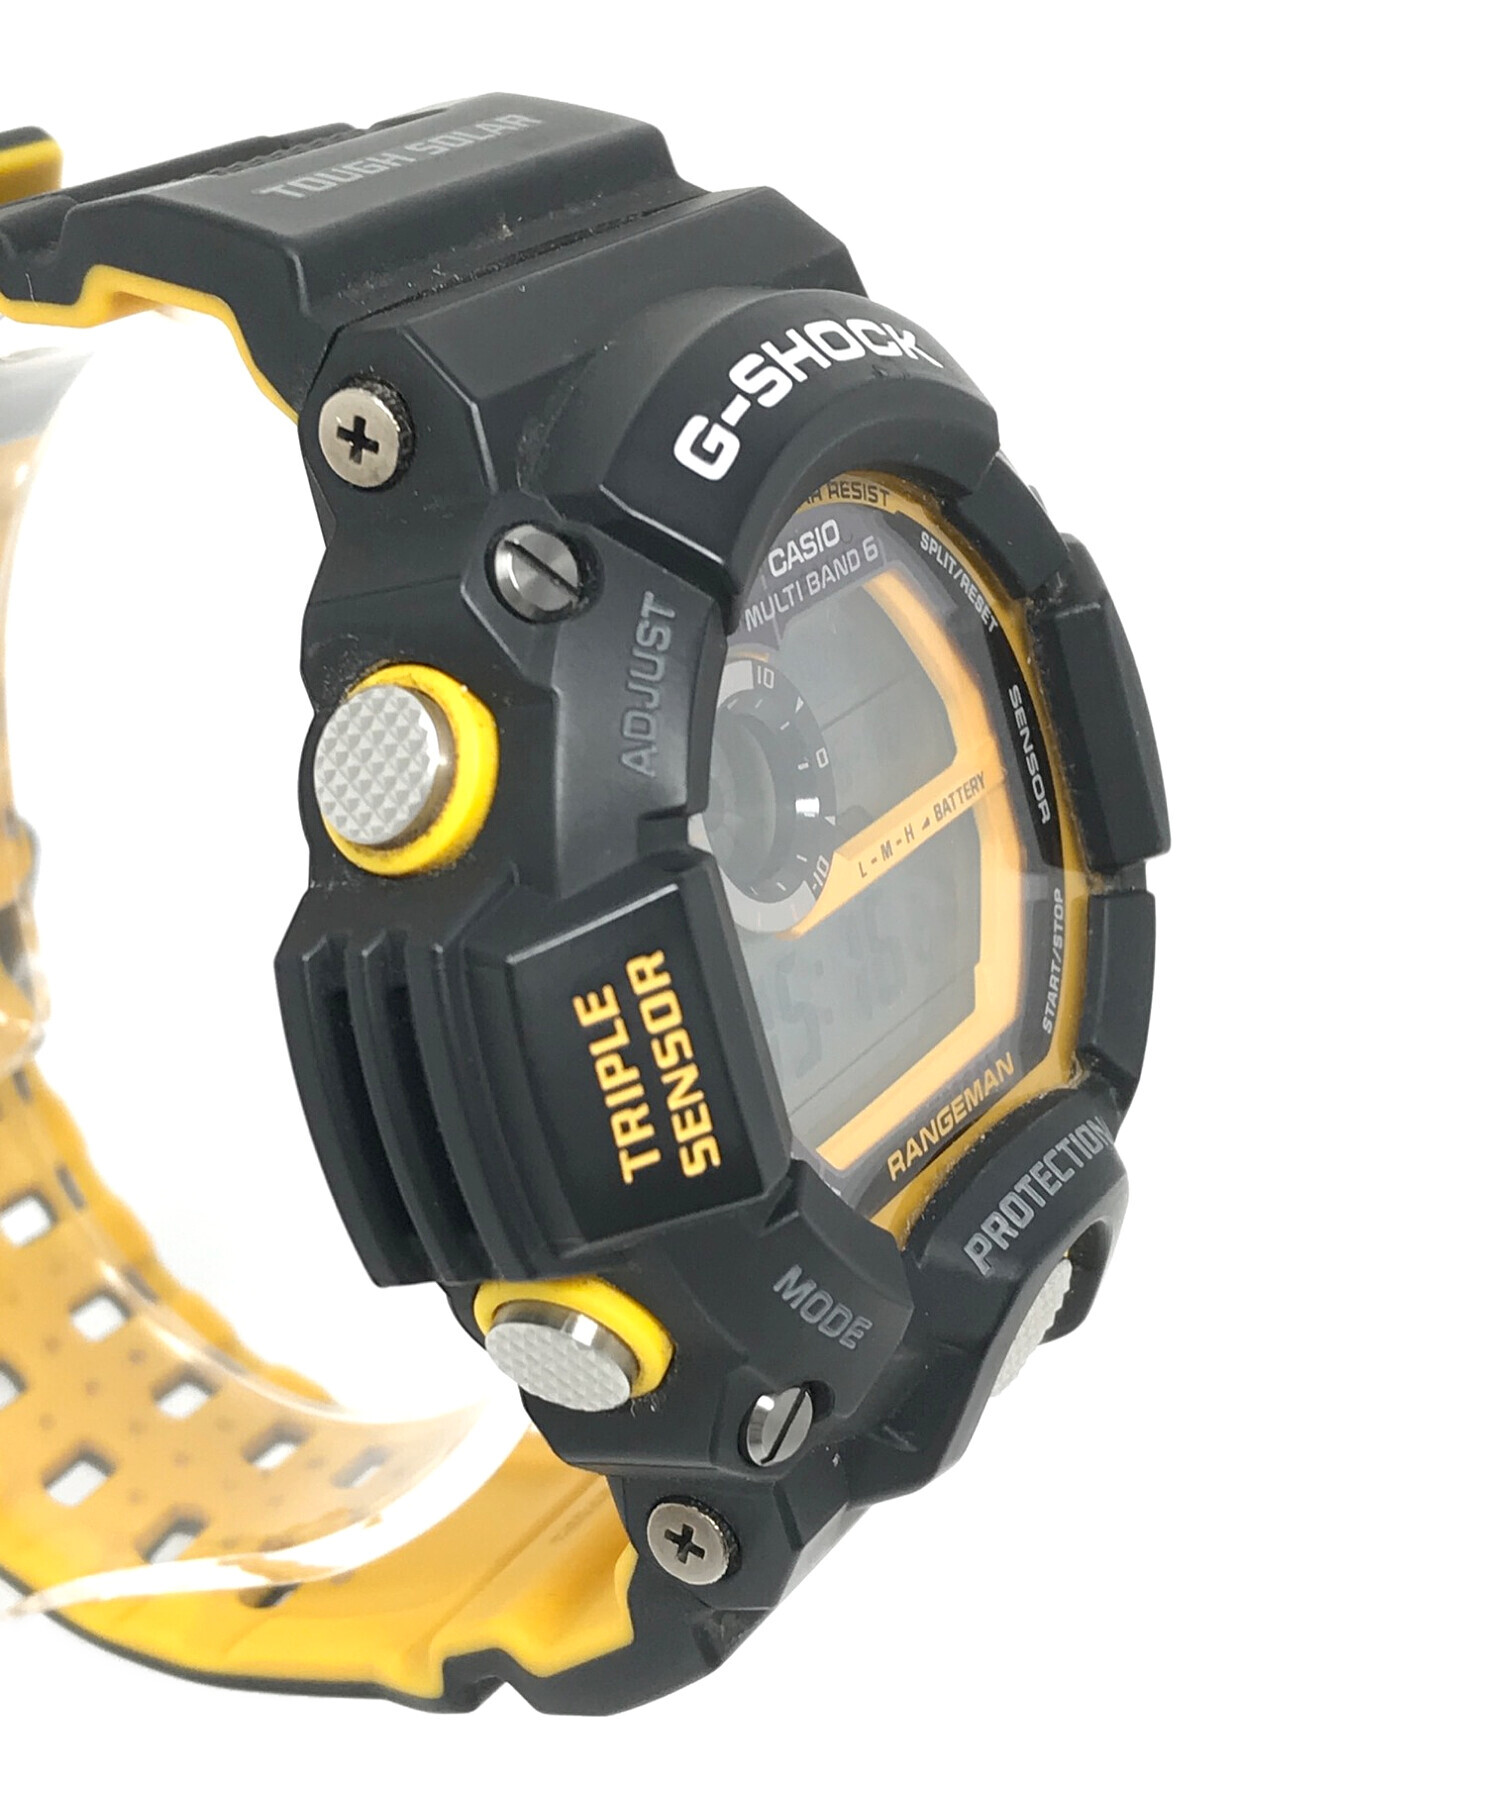 CASIO (カシオ) デジタルウォッチ G-SHOCK（ジーショック）電波ソーラー 腕時計 サイズ:実寸サイズにてご確認ください。